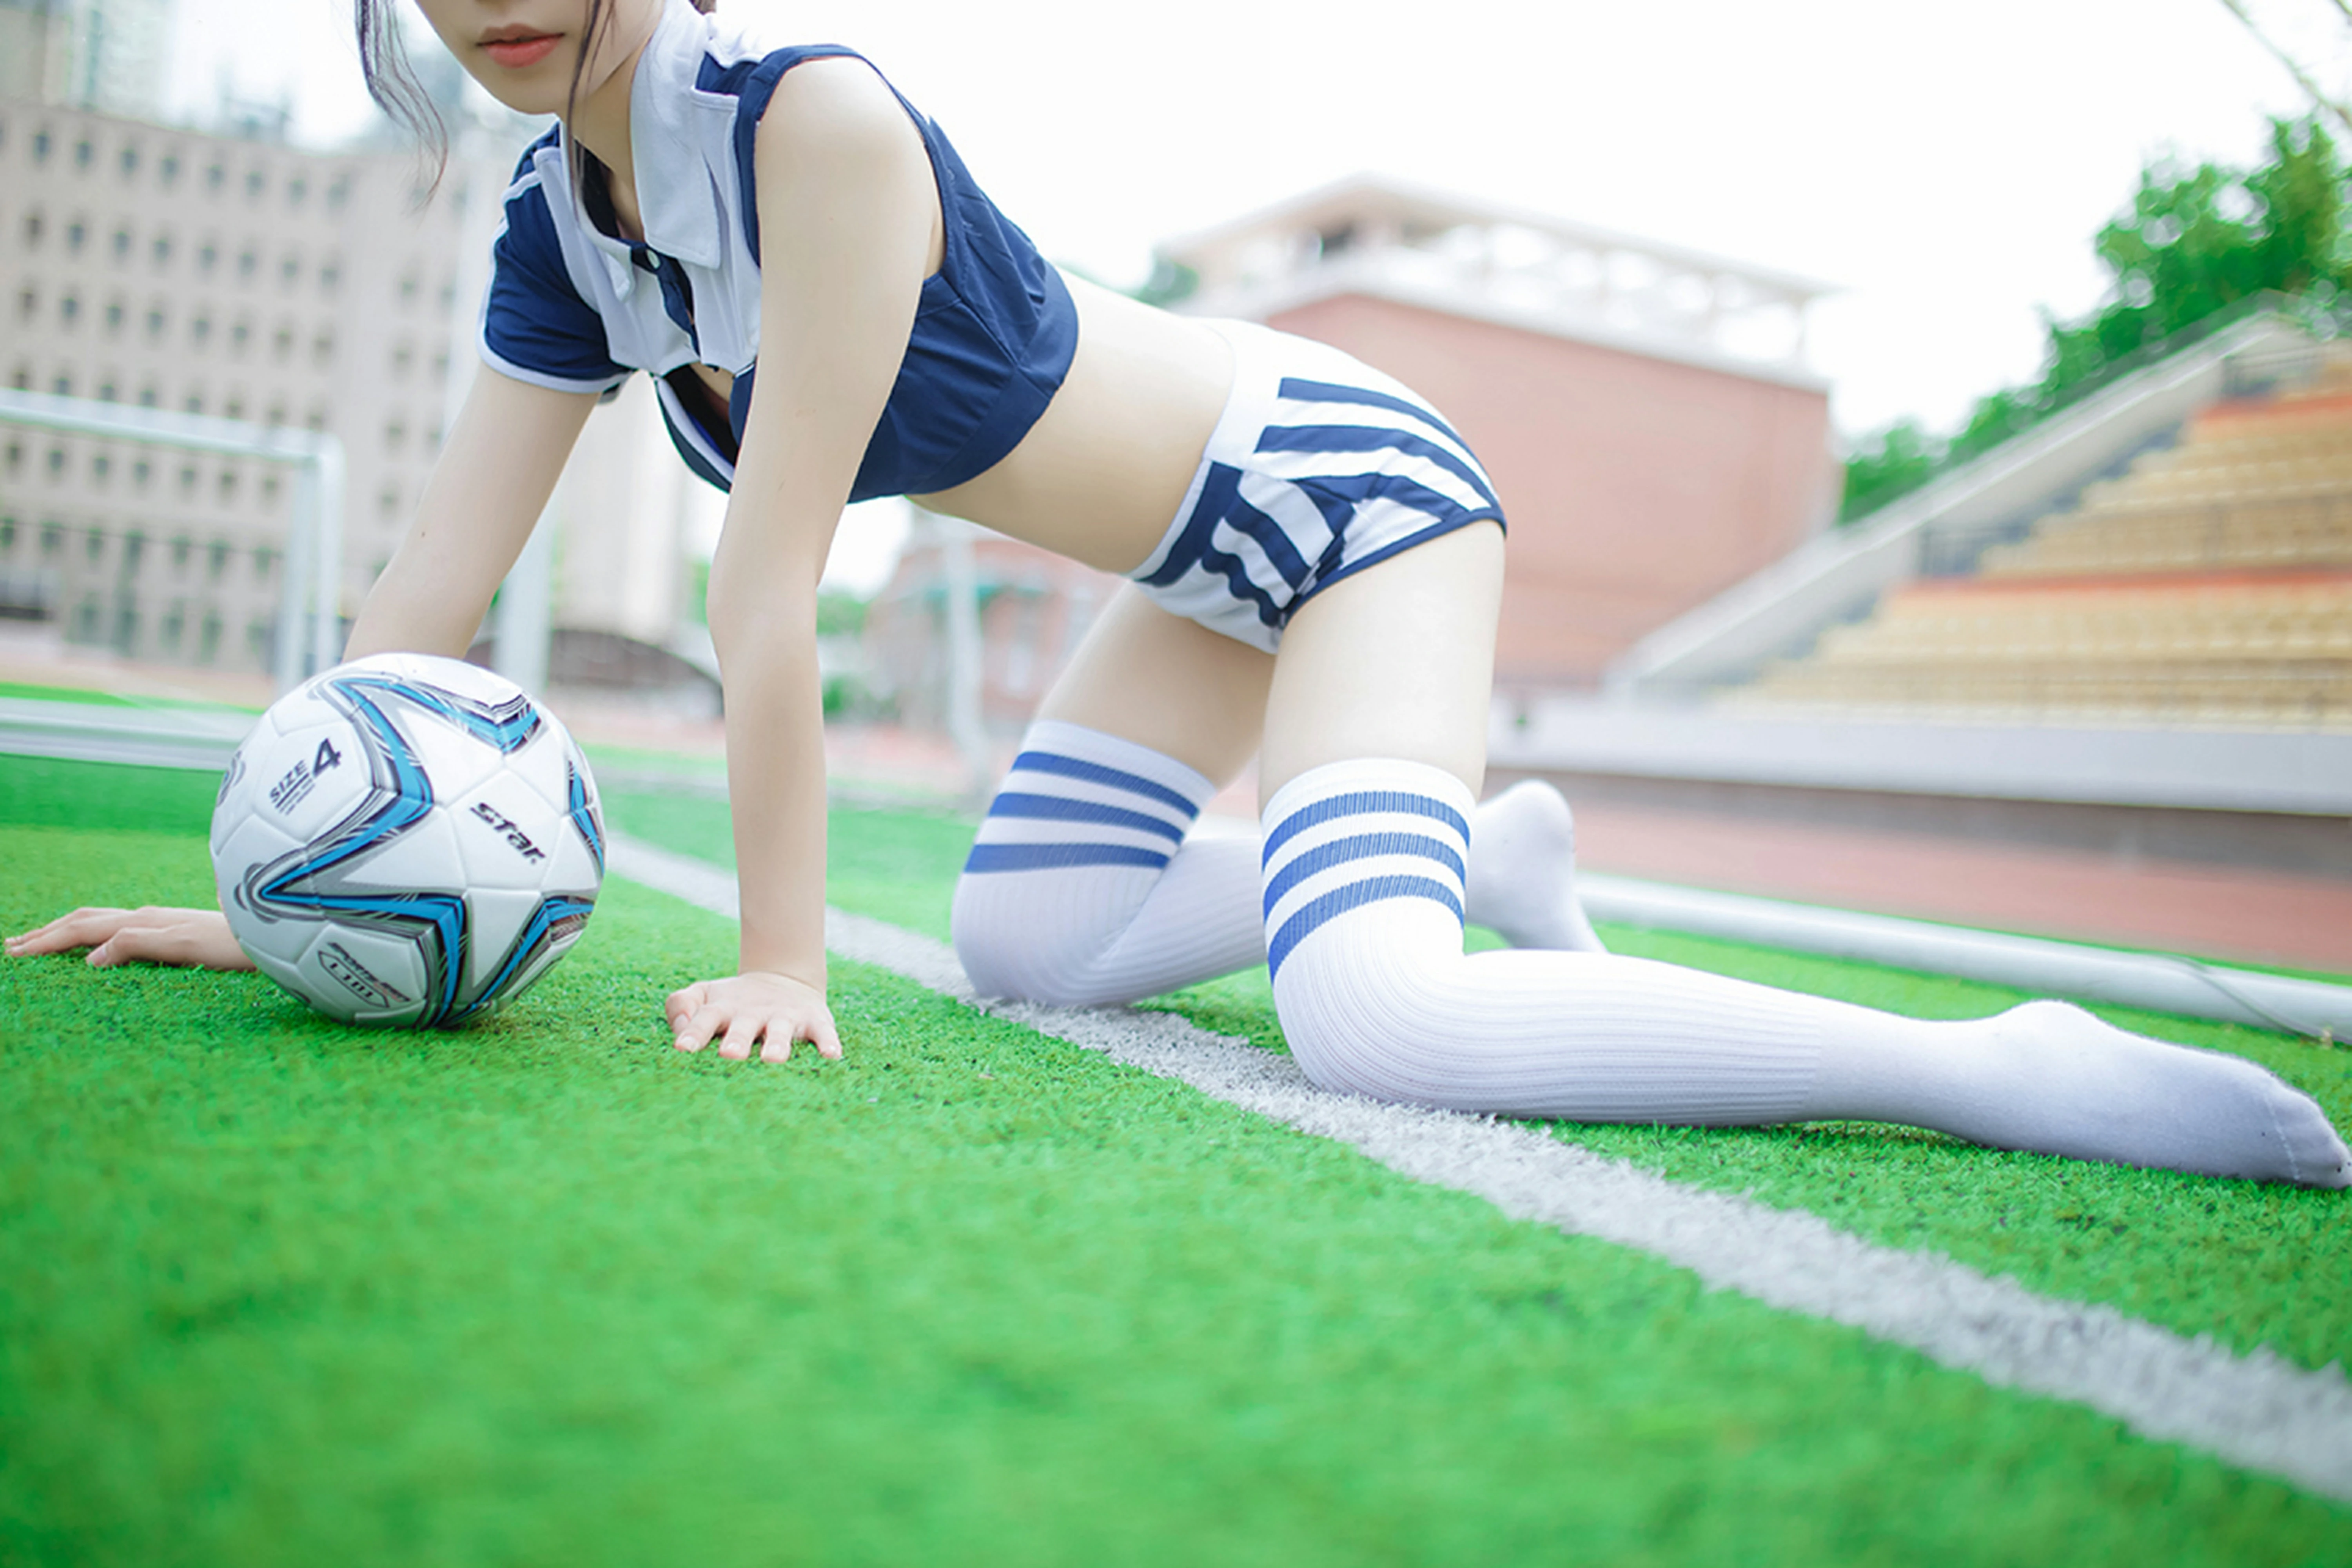 [风之领域]NO.072 性感足球宝贝 蓝色运动短袖与短裤加白色丝袜美腿私房写真集,